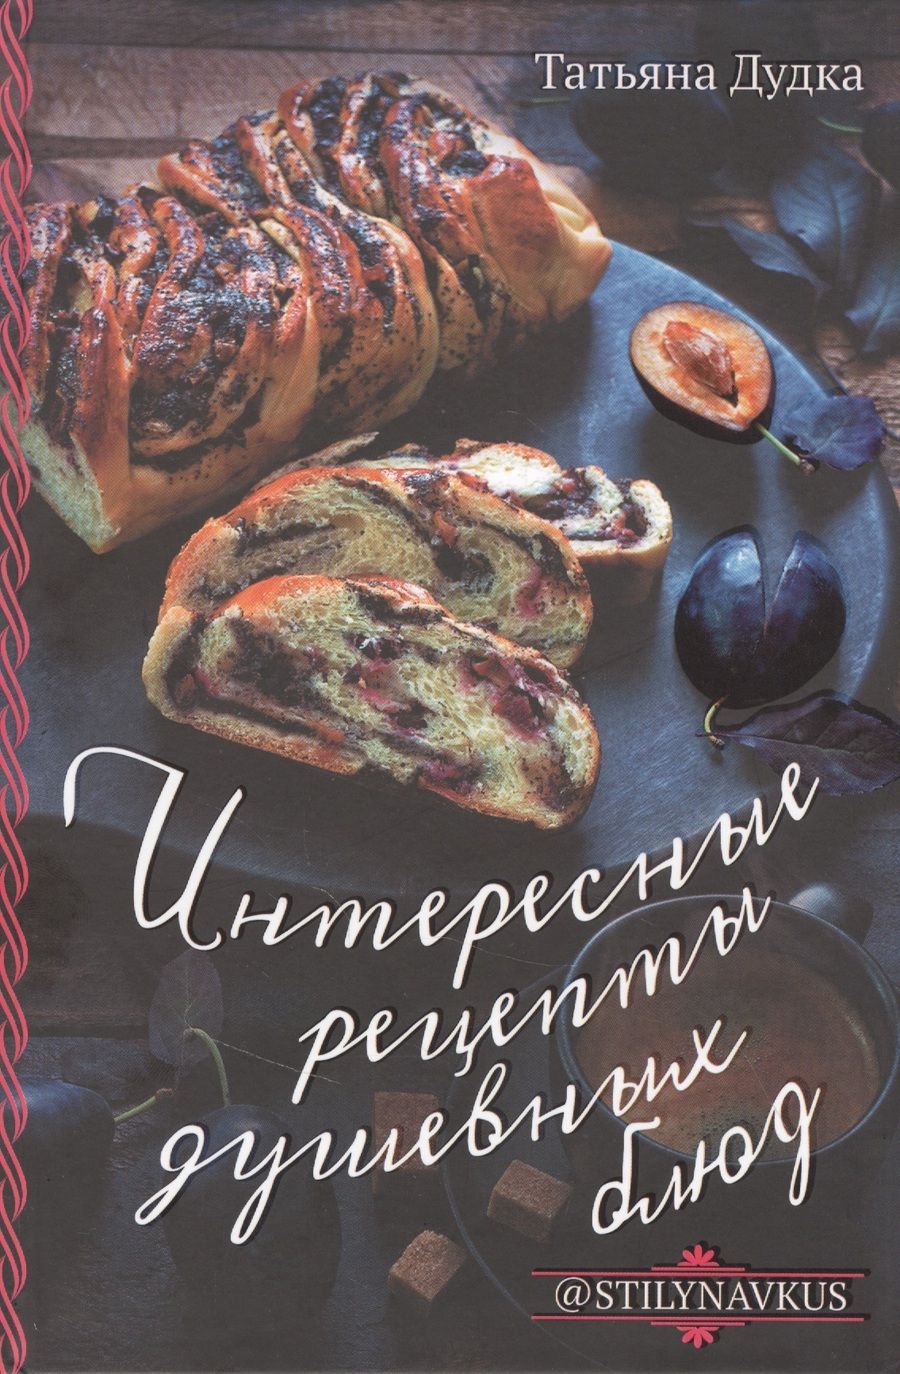 Обложка книги "Татьяна Дудка: Интересные рецепты душевных блюд"